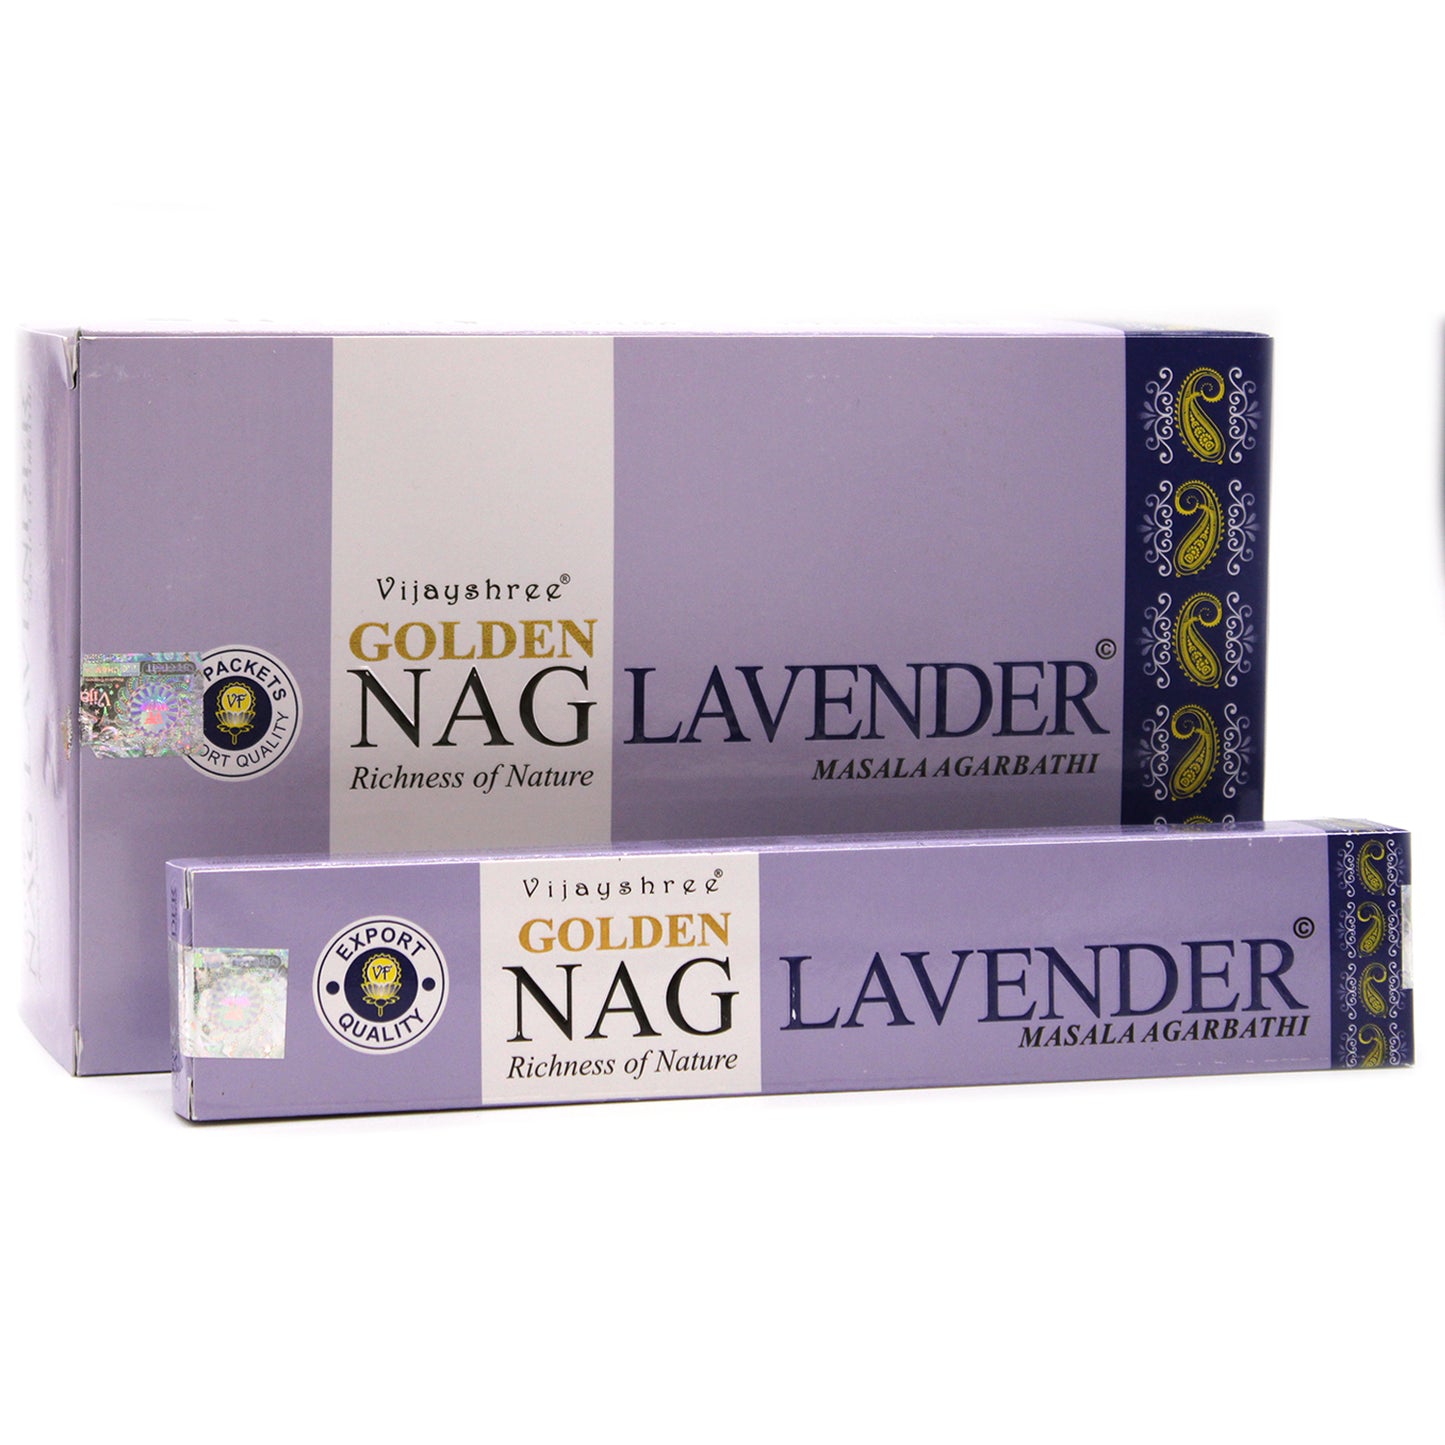 Golden Nag Lavender Incense Sticks 15 grams